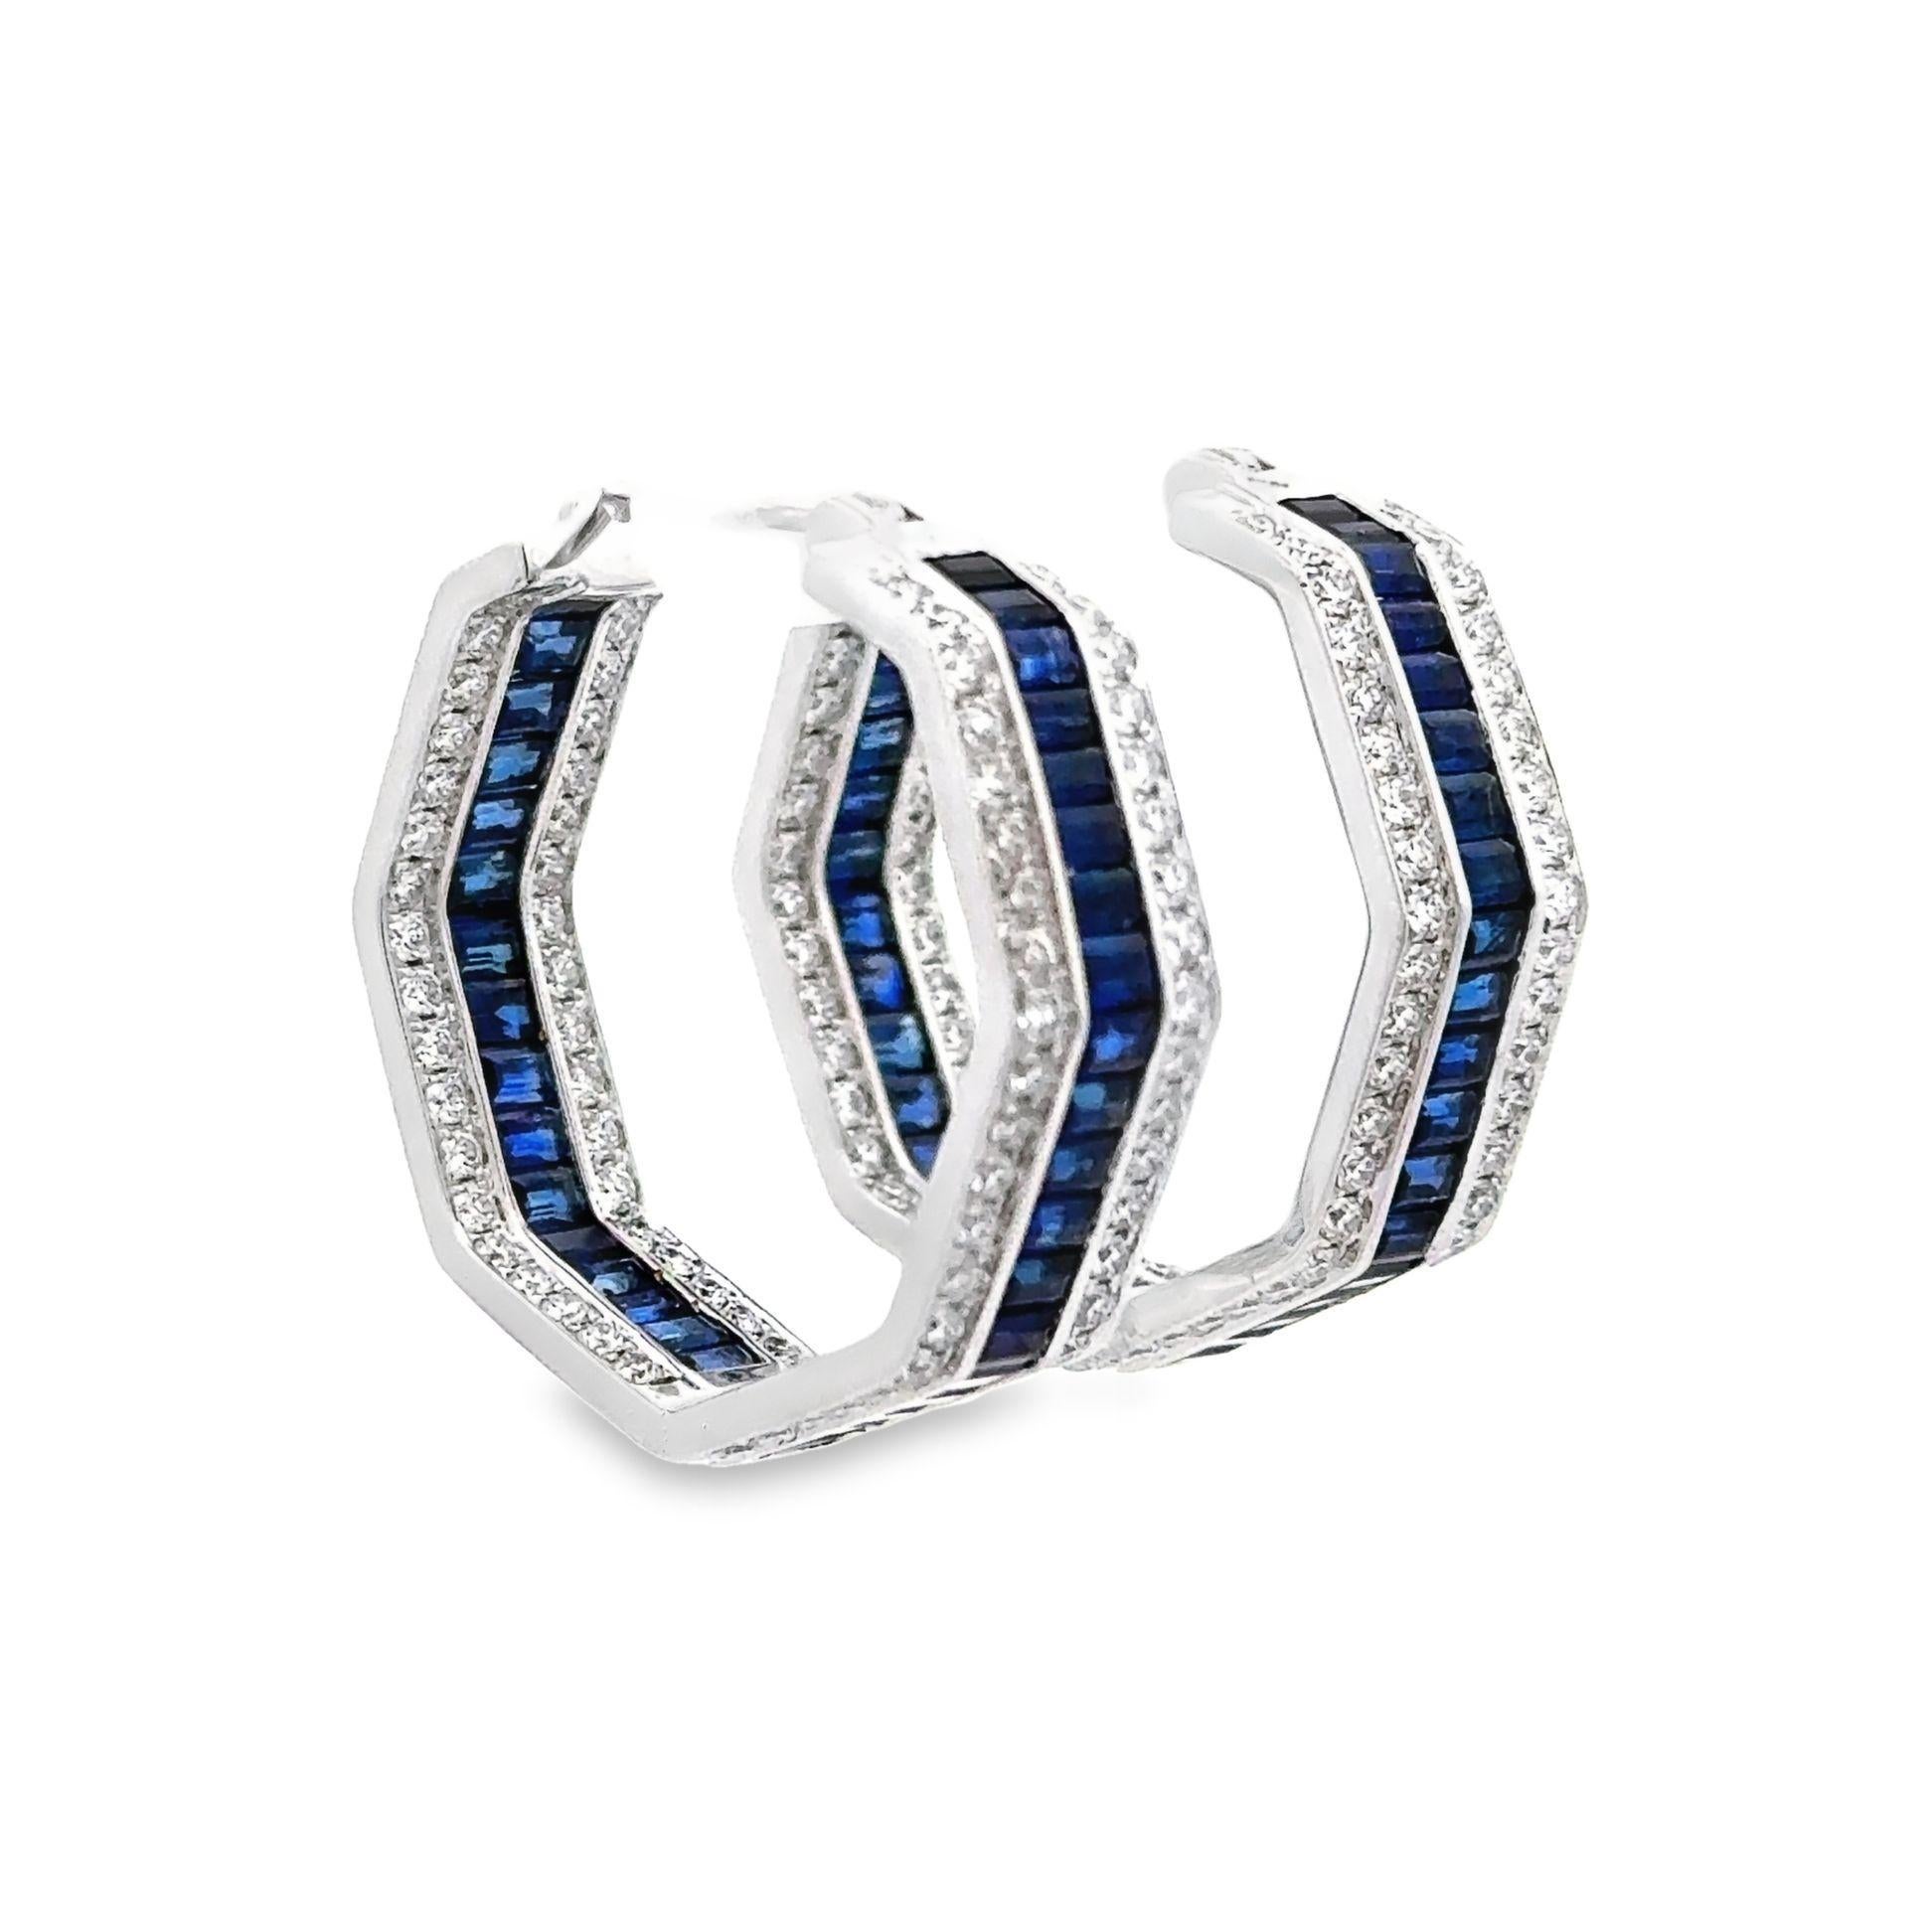 Fabriqués en or blanc 18kt, ces superbes anneaux de taille moyenne conviennent aussi bien à une tenue glamour qu'à une tenue décontractée. Les 7,47 carats de saphirs bleus baguettes sont entourés d'un parfait pavage de 2,20 carats de diamants ronds